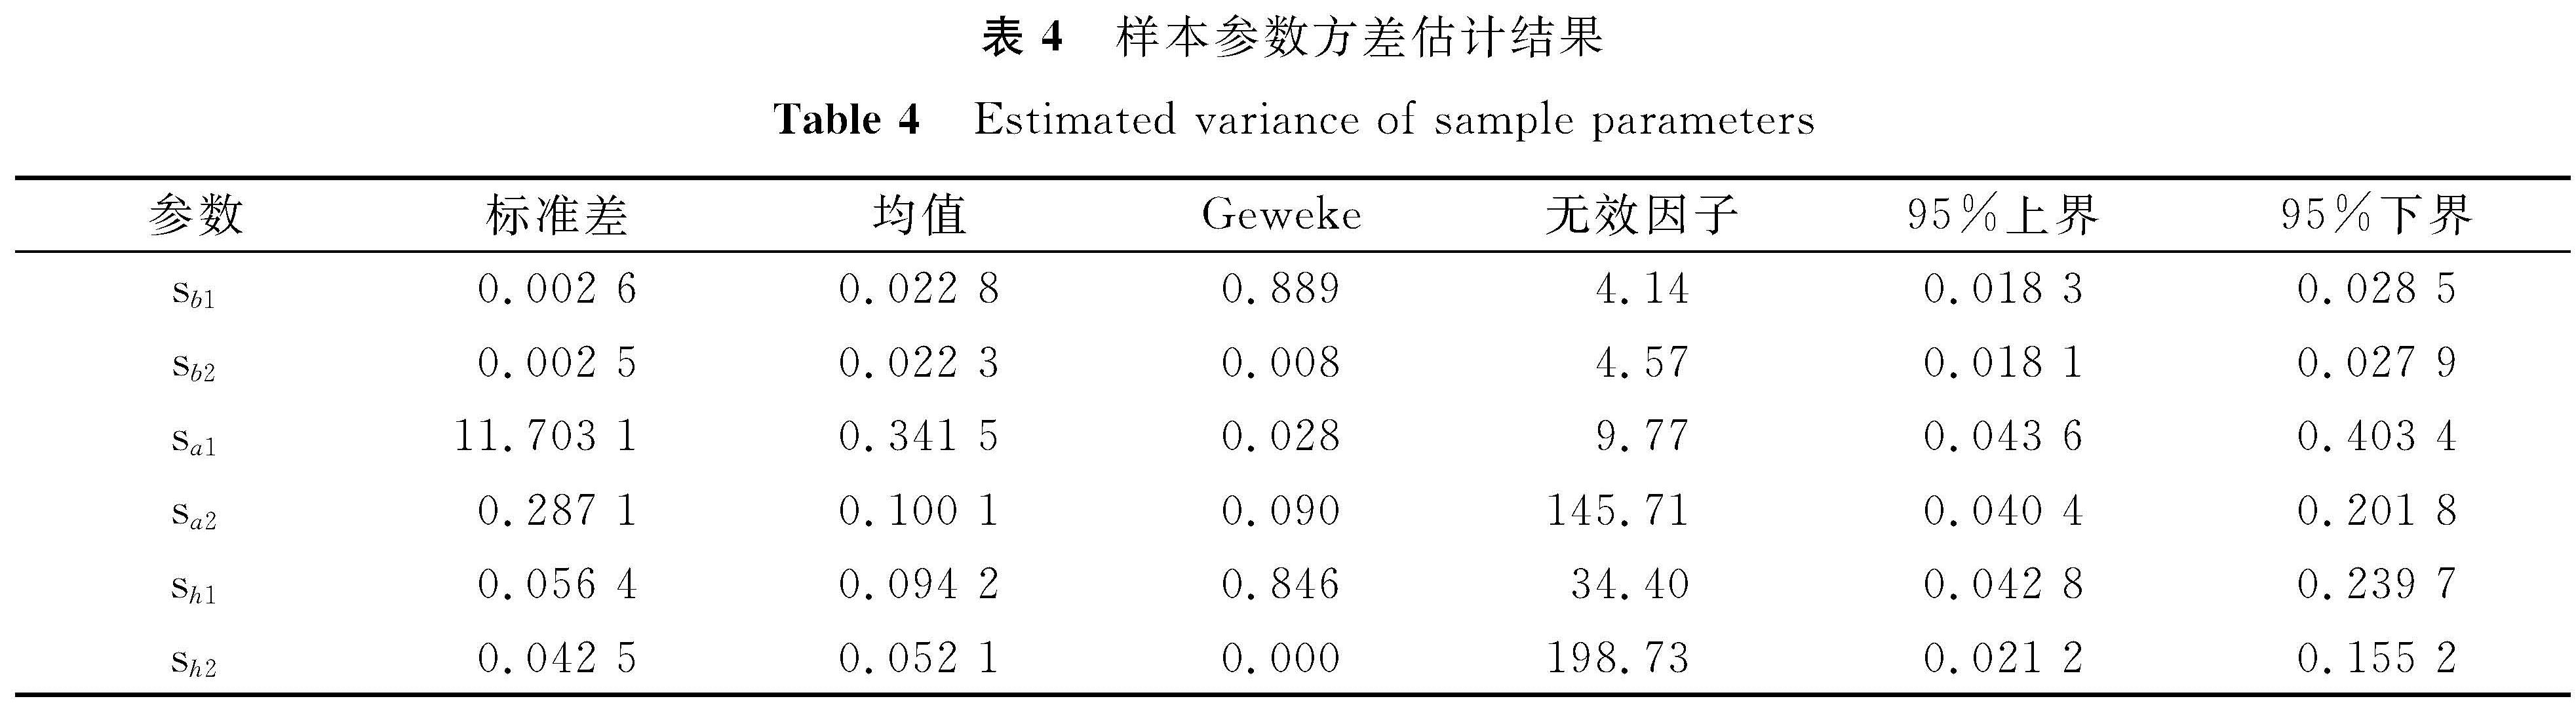 表4 样本参数方差估计结果<br/>Table 4 Estimated variance of sample parameters